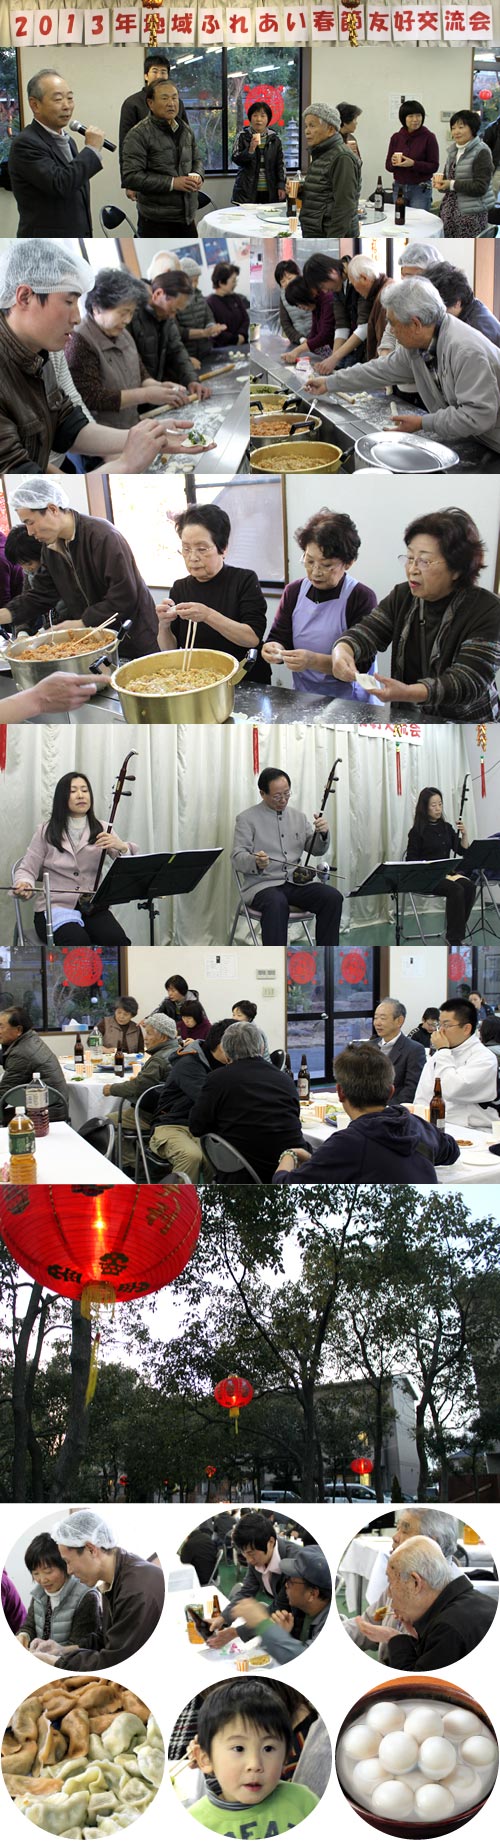 四国華僑華人連合会主催『2013年春節友好交流会』を開催の写真